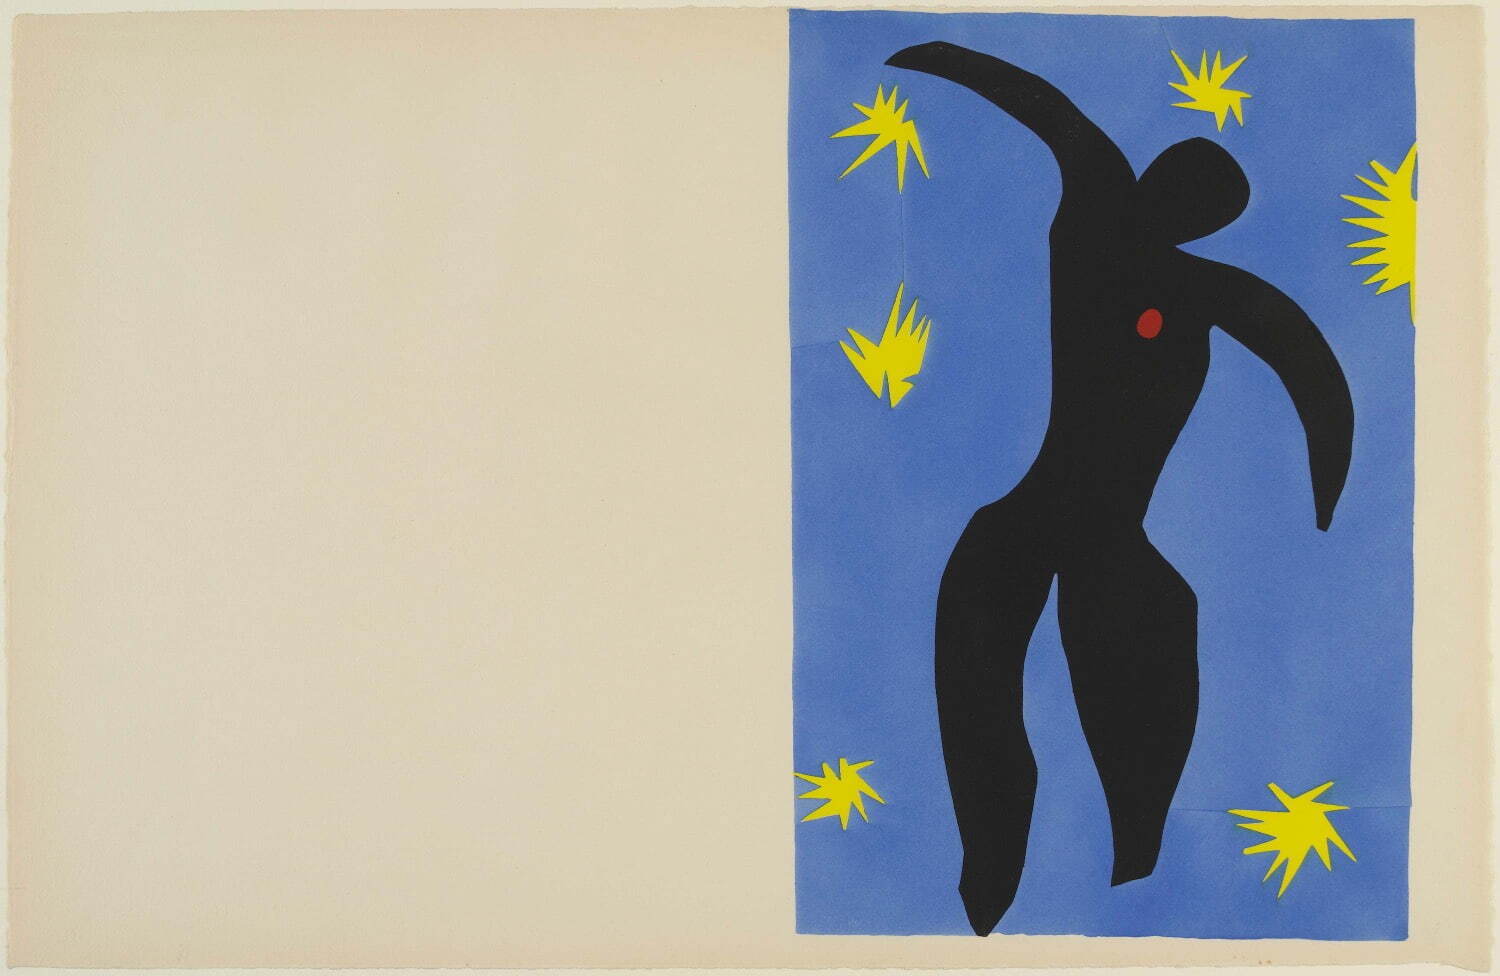 アンリ・マティス《イカロス(版画シリーズ「ジャズ」より)》1947年 ポショワール／アルシュ・ヴェラン紙 ポンピドゥー・センター／国立近代美術館
Centre Pompidou, Paris, Musée national d’art moderne-Centre de création industrielle